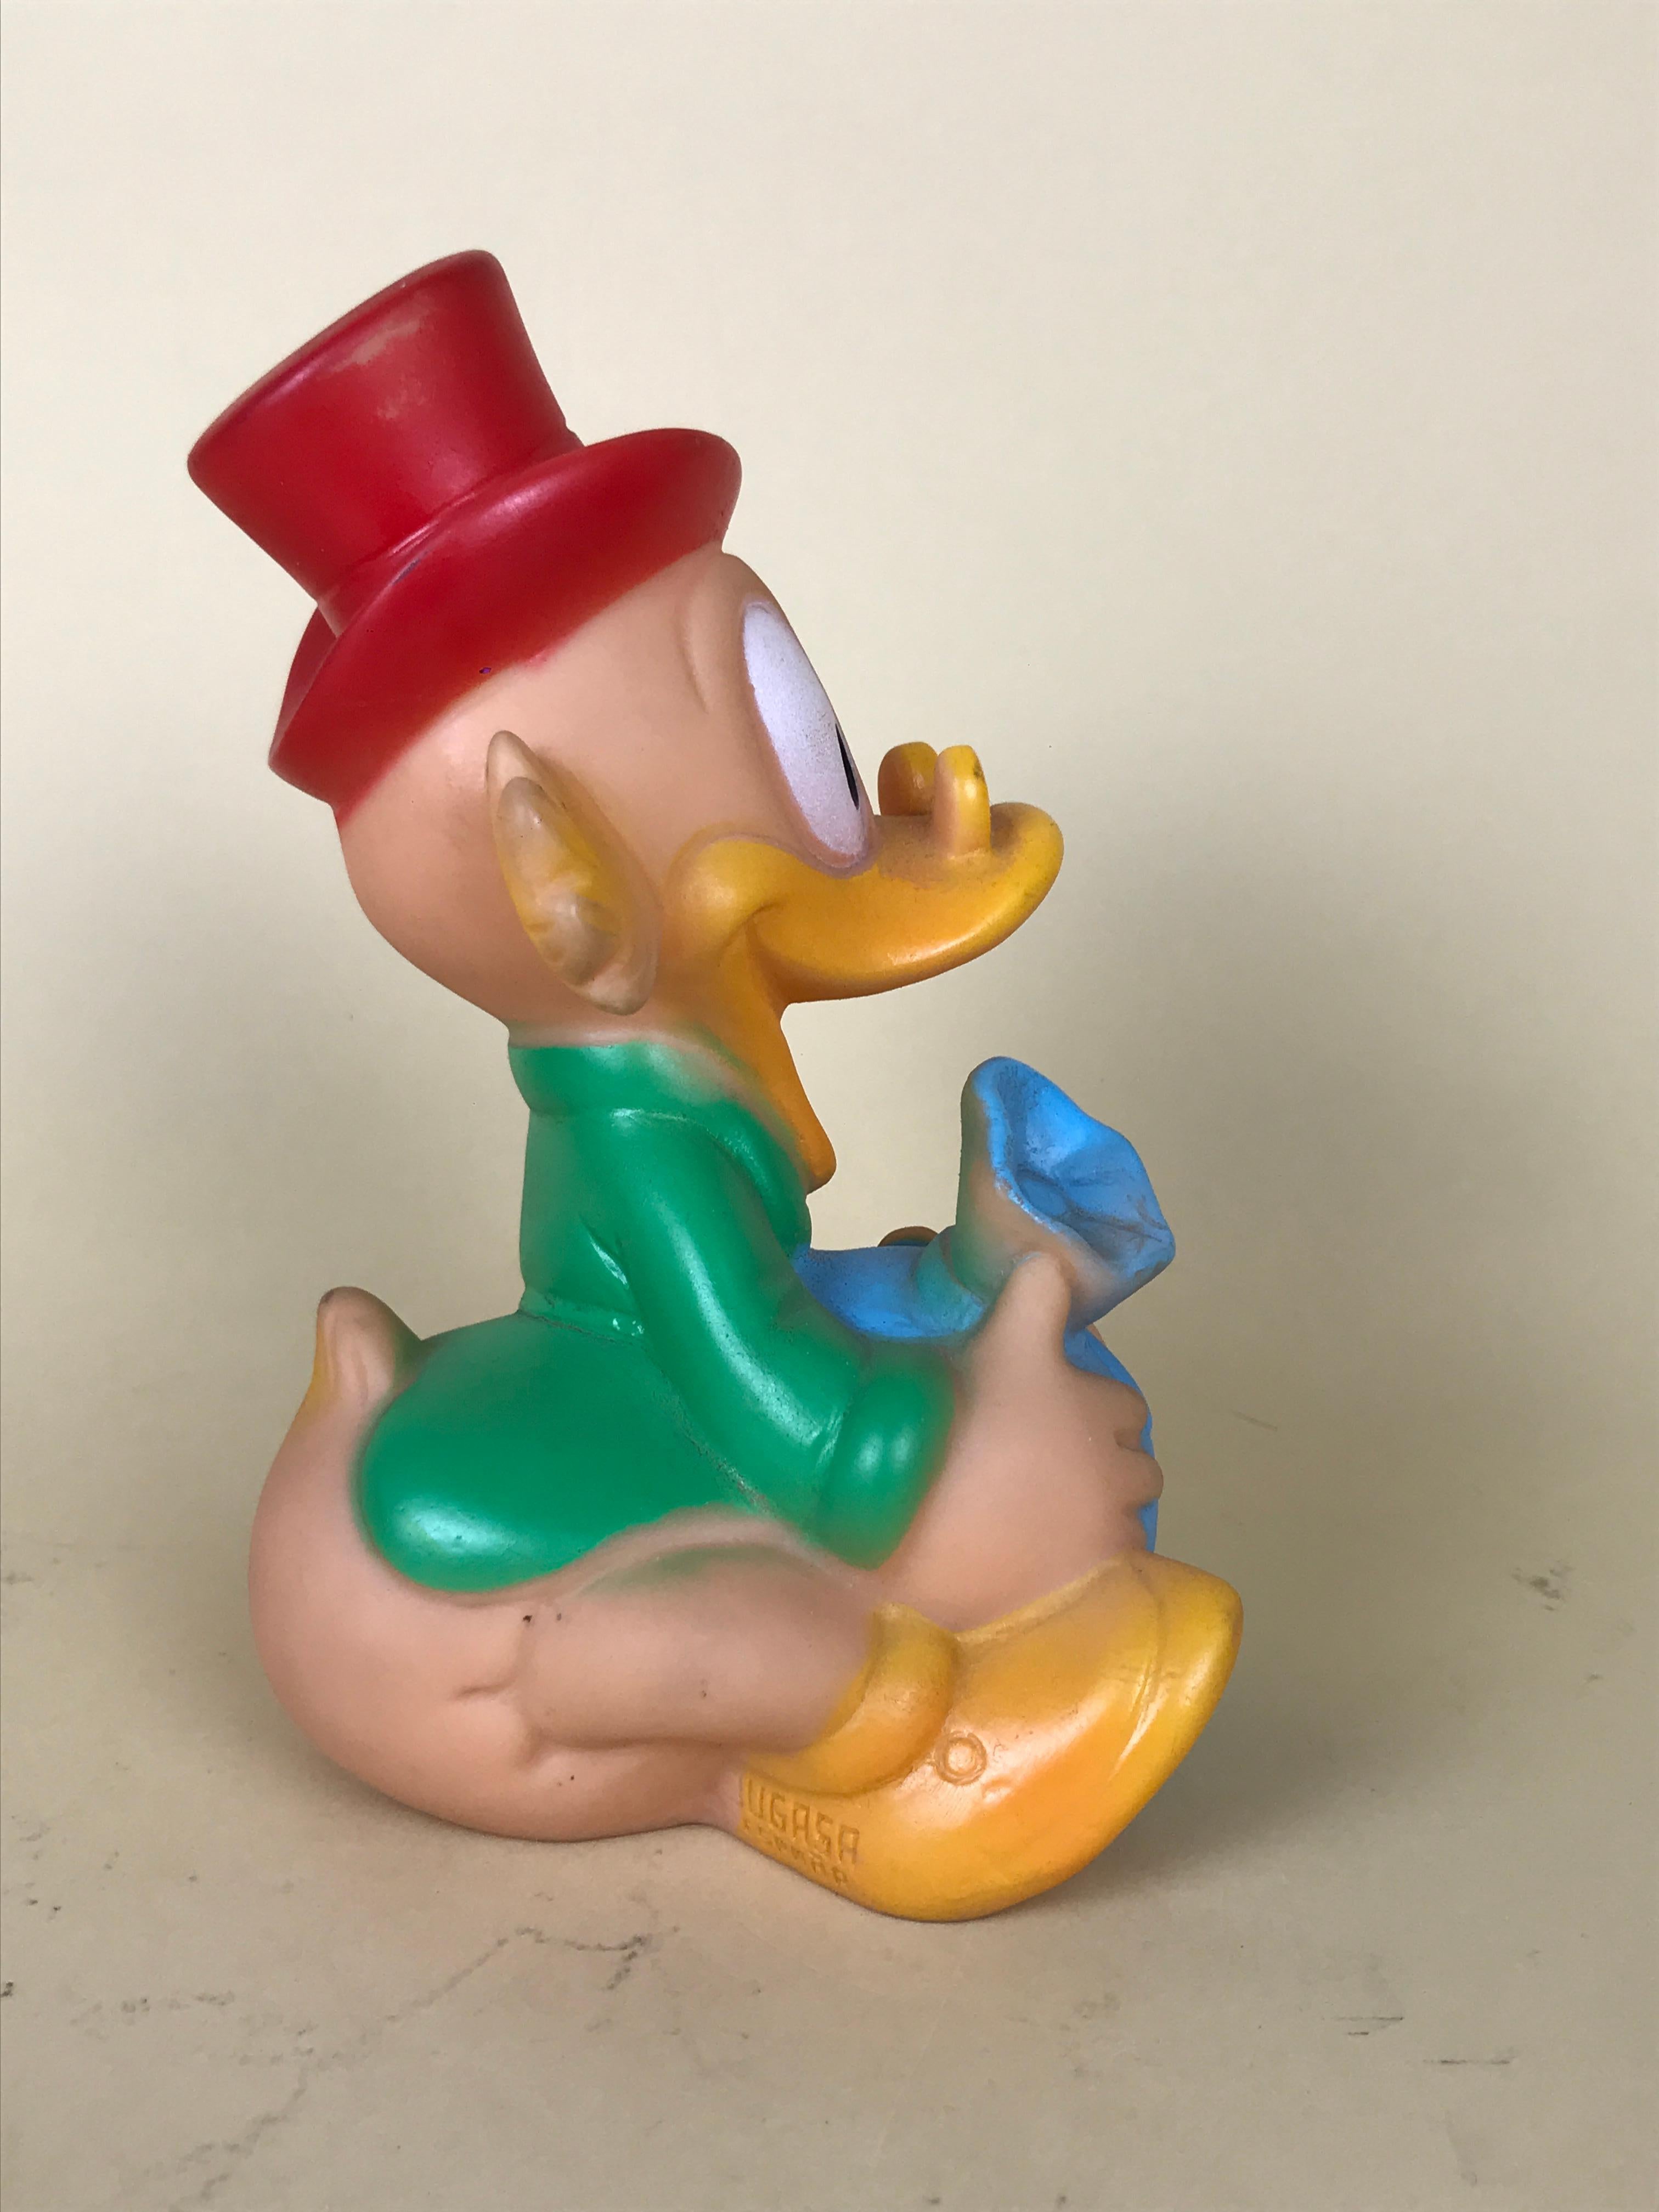 1960s Vintage Uncle Scrooge Squeak Toy Made in Spain by Jugasa for Disney 1